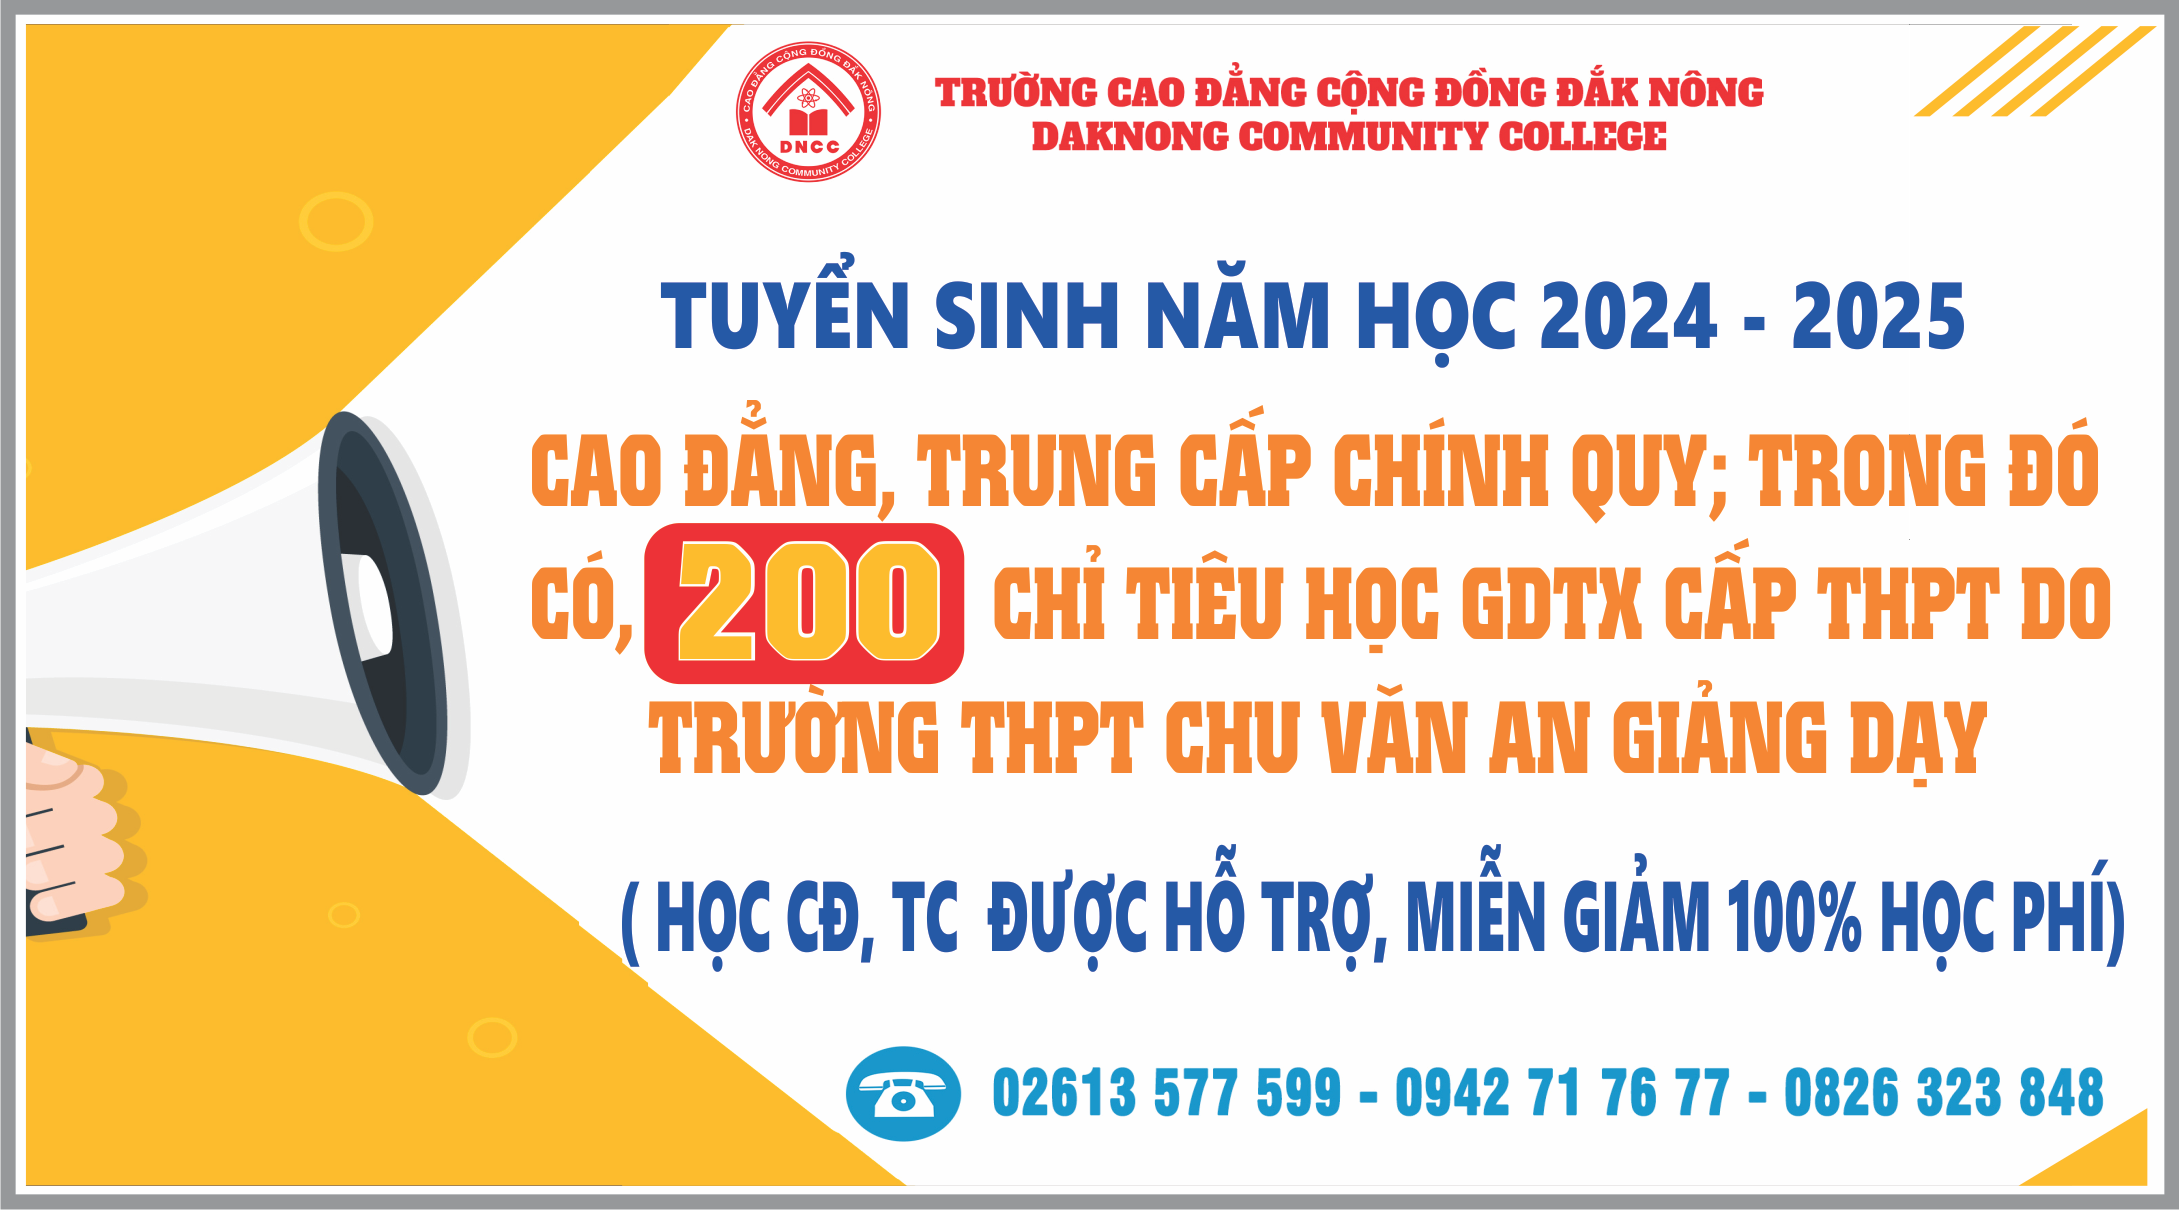 Trường Cao đẳng Cộng đồng Đắk Nông Miễn 100% học phí cho học sinh, sinh viên đăng ký học trung cấp, cao đẳng năm 2024